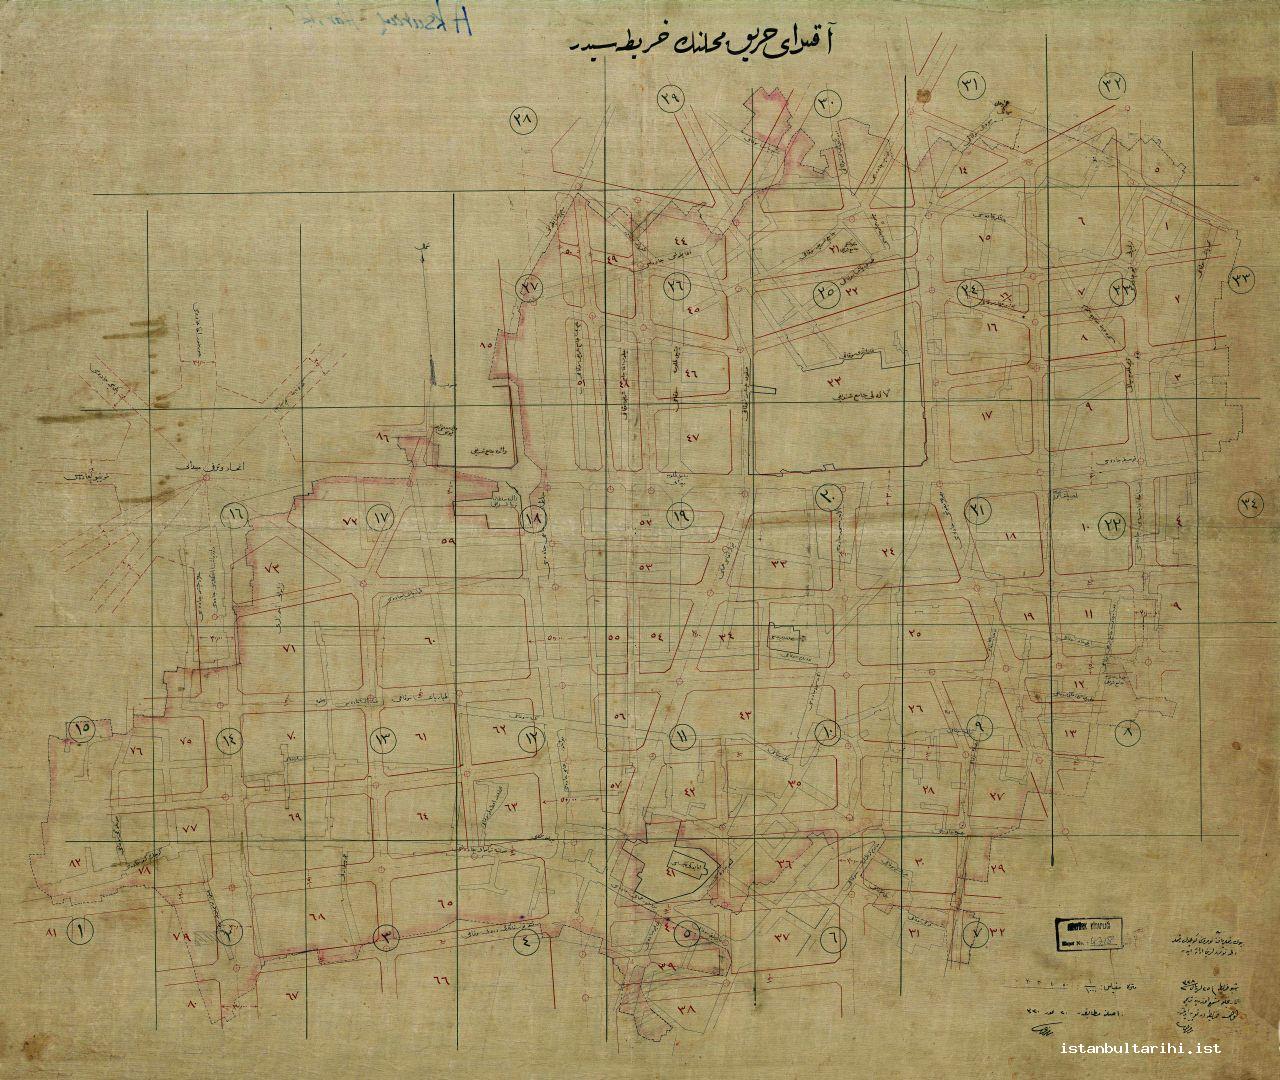 7- 1912 tarihli Aksaray yangın bölgesinin haritası (İBB, Atatürk Kitaplığı)